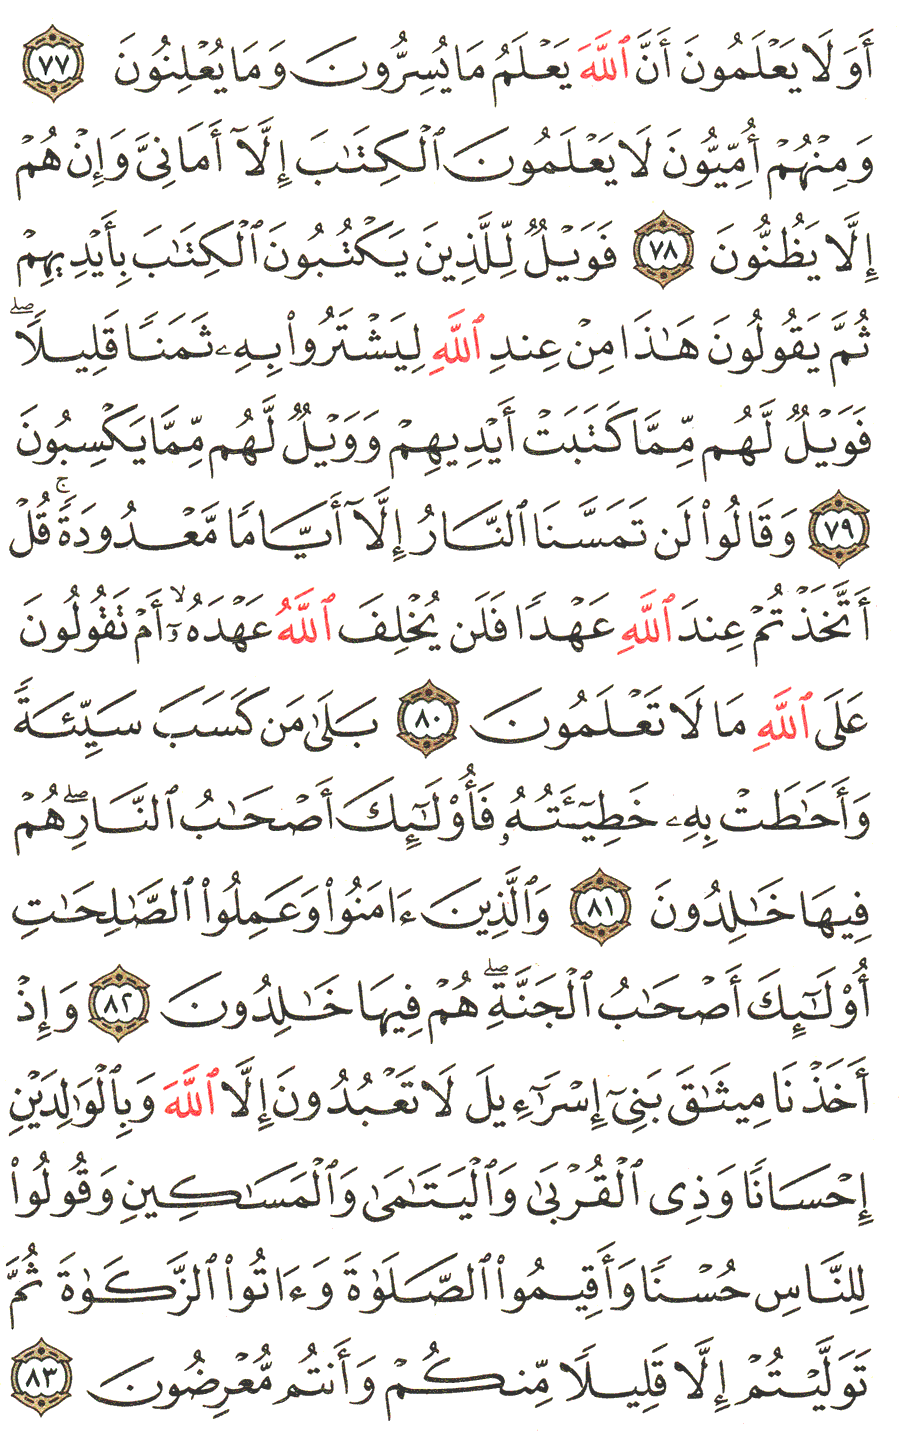 الصفحة رقم  12 من القرآن الكريم مكتوبة من المصحف